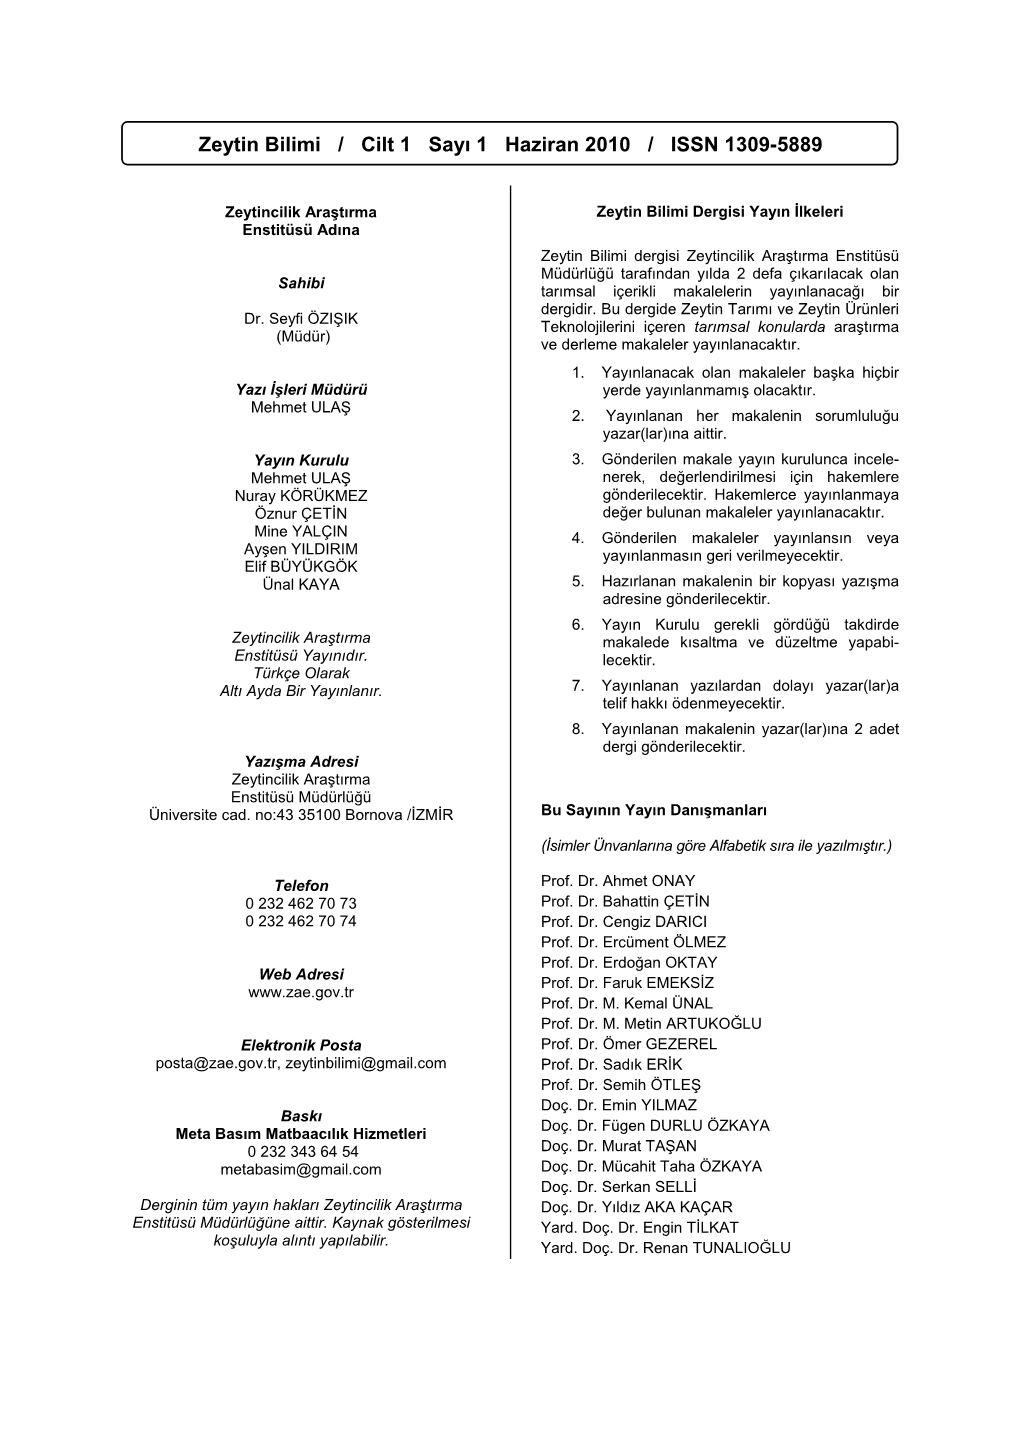 Zeytin Bilimi / Cilt 1, Sayı 1 Haziran 2010 / ISSN 1309-5889